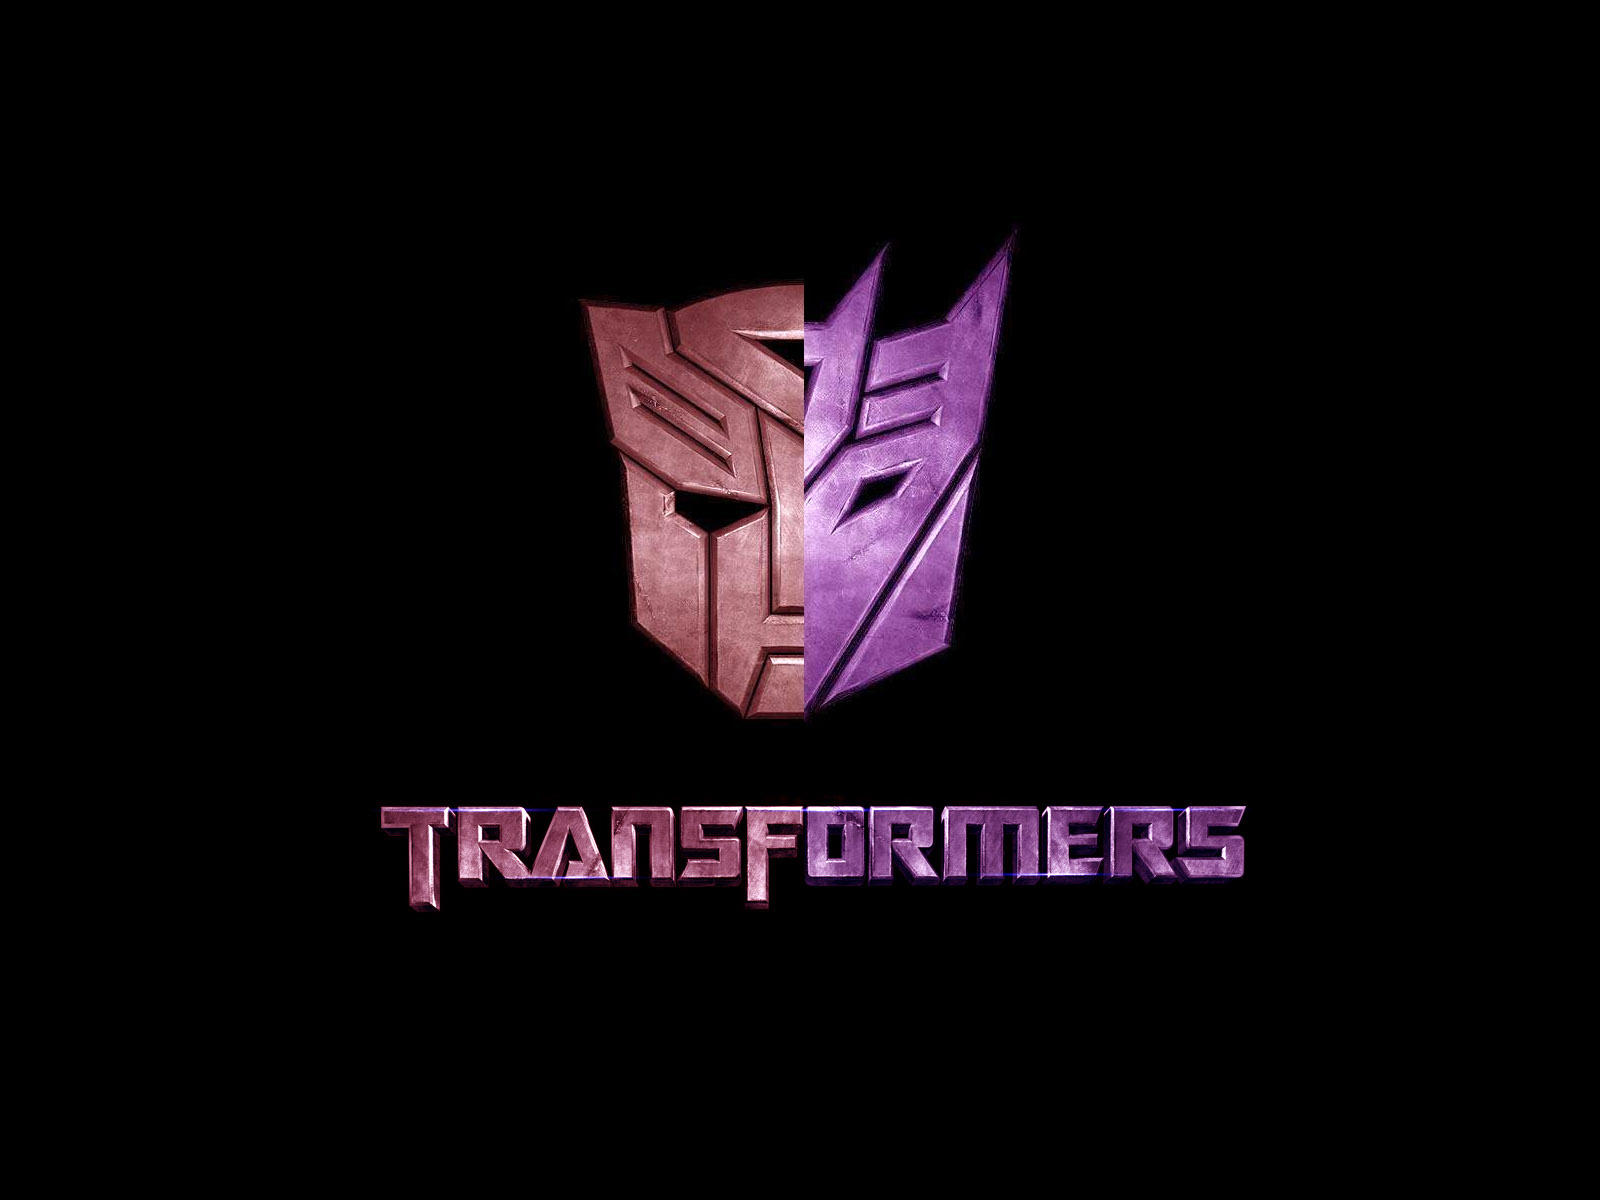 壁纸1600x1200Transformers 1 12壁纸 单个游戏 Transformers 第一辑壁纸 单个游戏 Transformers 第一辑图片 单个游戏 Transformers 第一辑素材 游戏壁纸 游戏图库 游戏图片素材桌面壁纸